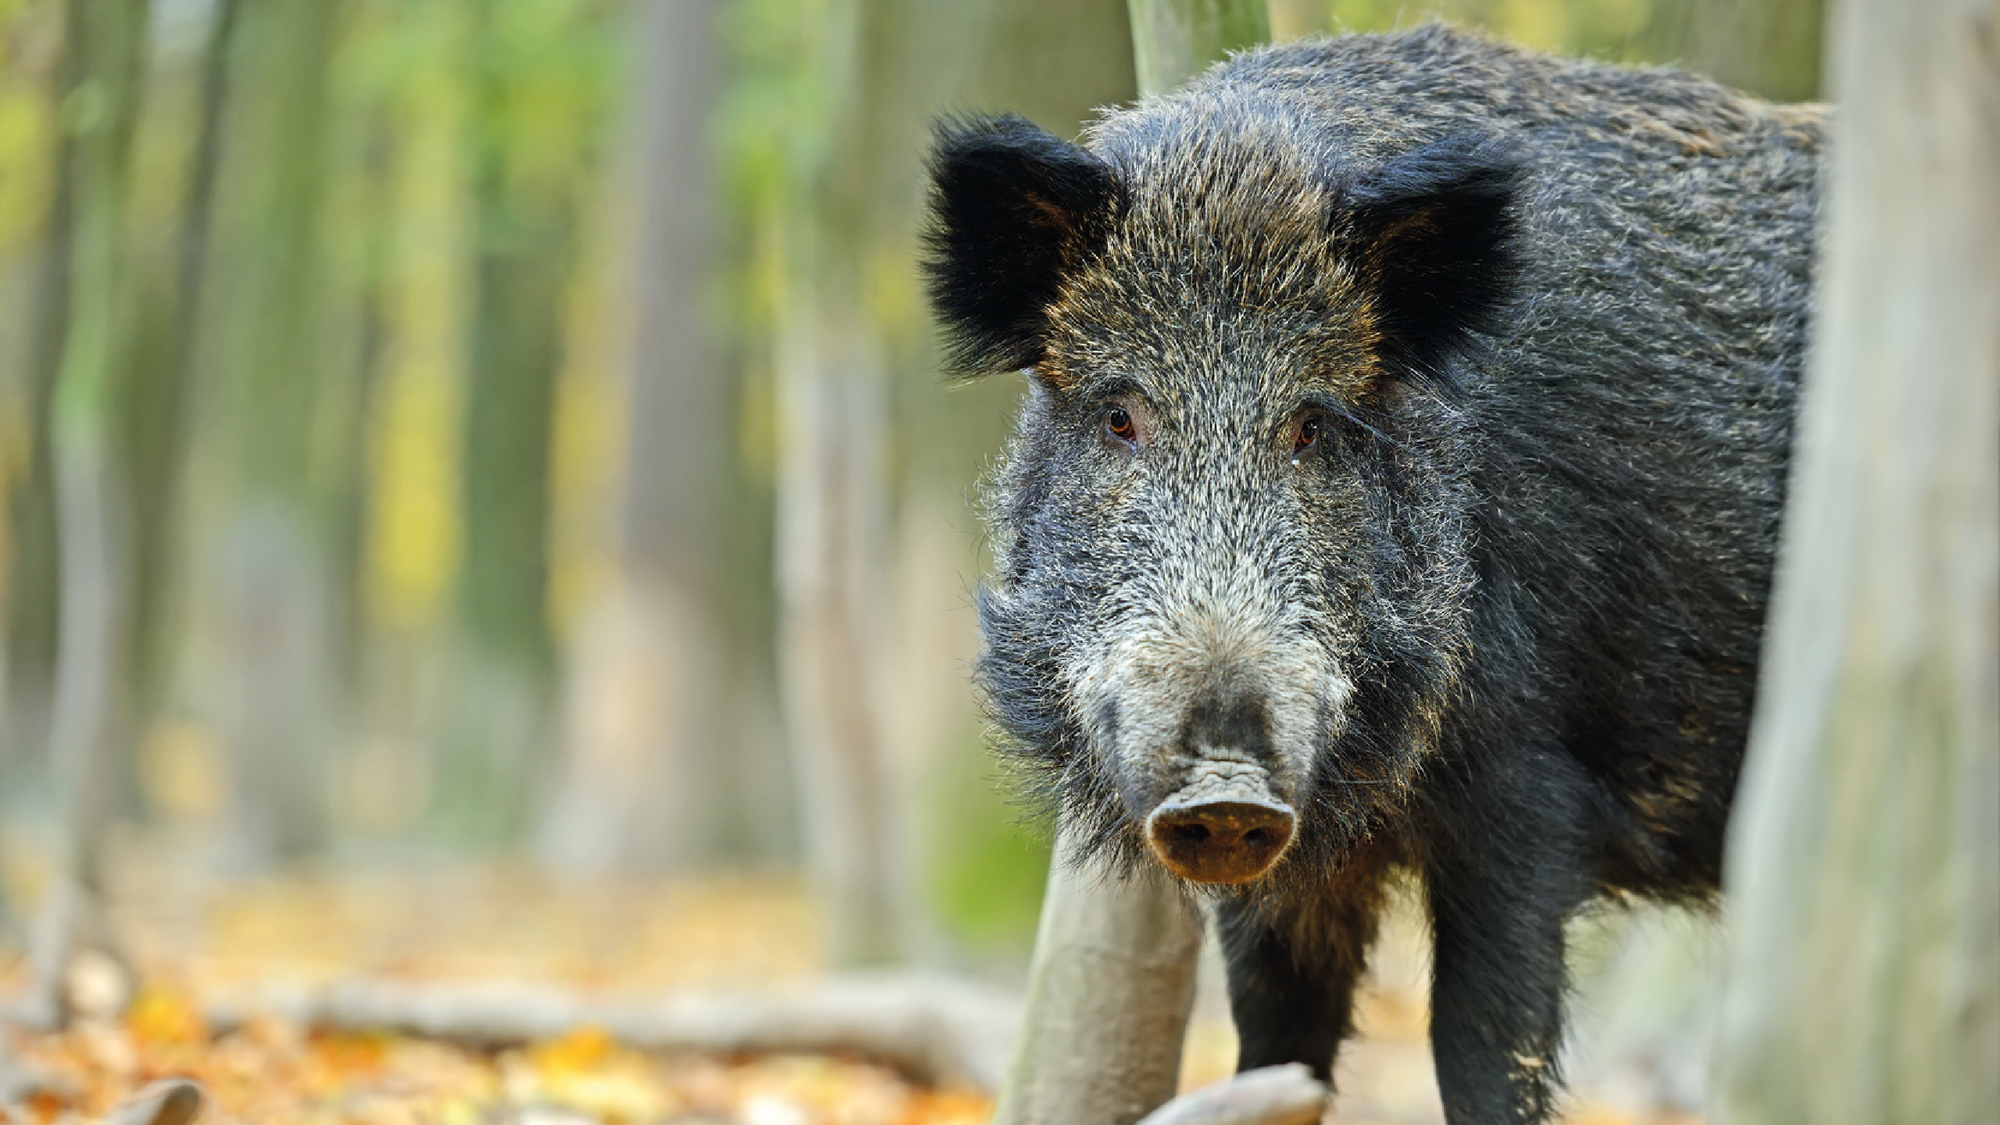 Wildschwein-Attacke? Keilerschutzprodukte von Outdoor-Ausrüster Kruedener® sind geprüfte und wirksame Produkte für die Jagd